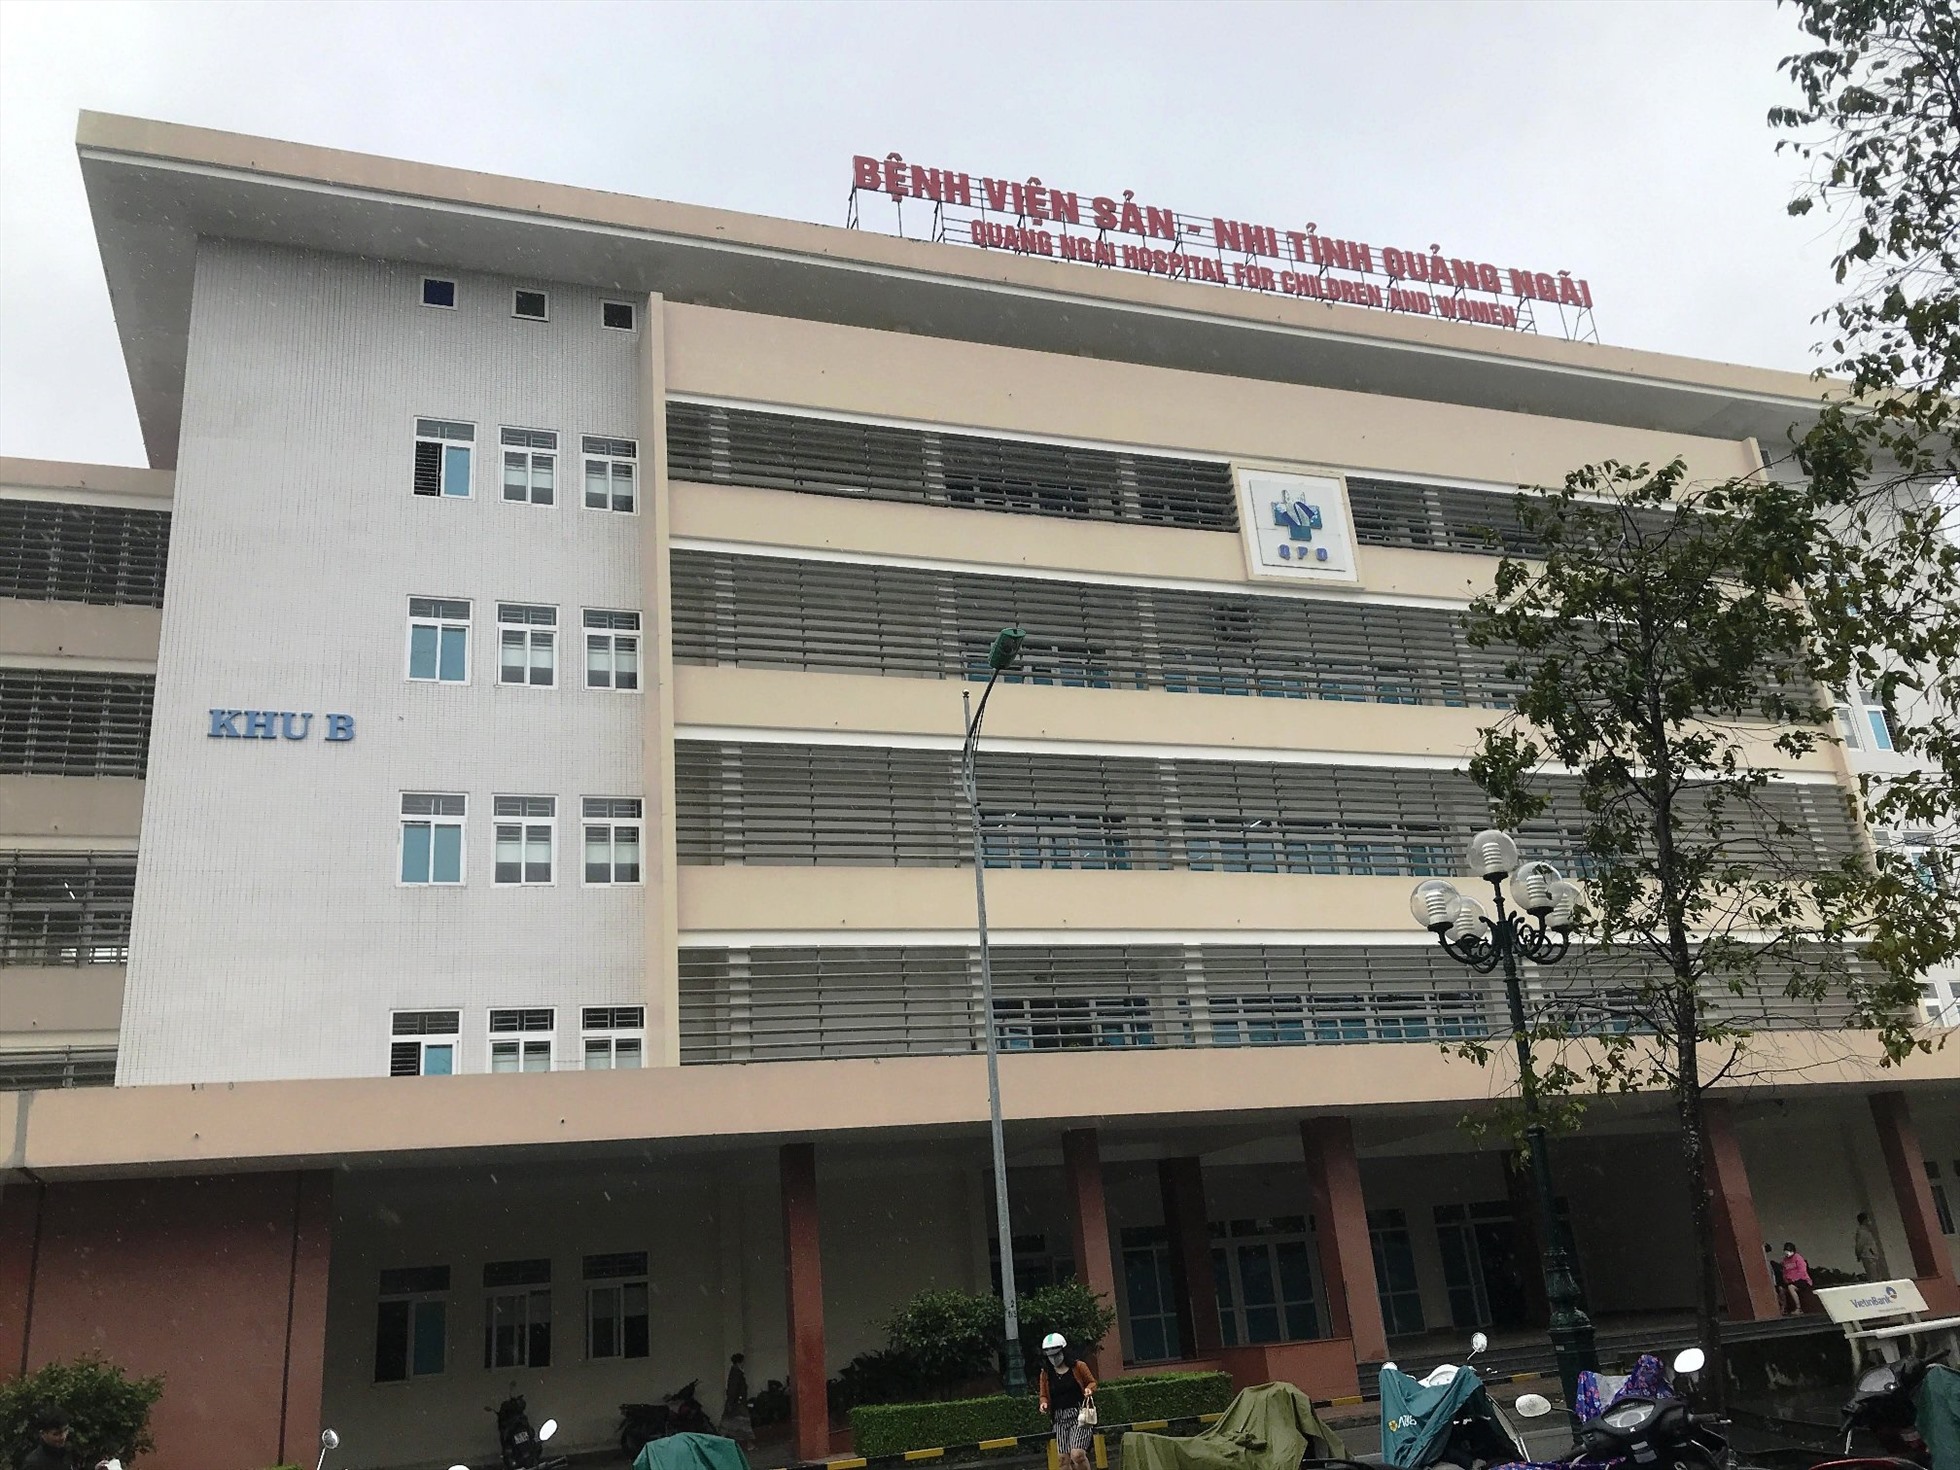 Bệnh viện Sản- Nhi tỉnh Quảng Ngãi nơi xảy ra vụ việc. Ảnh: ĐÔNG GIANG